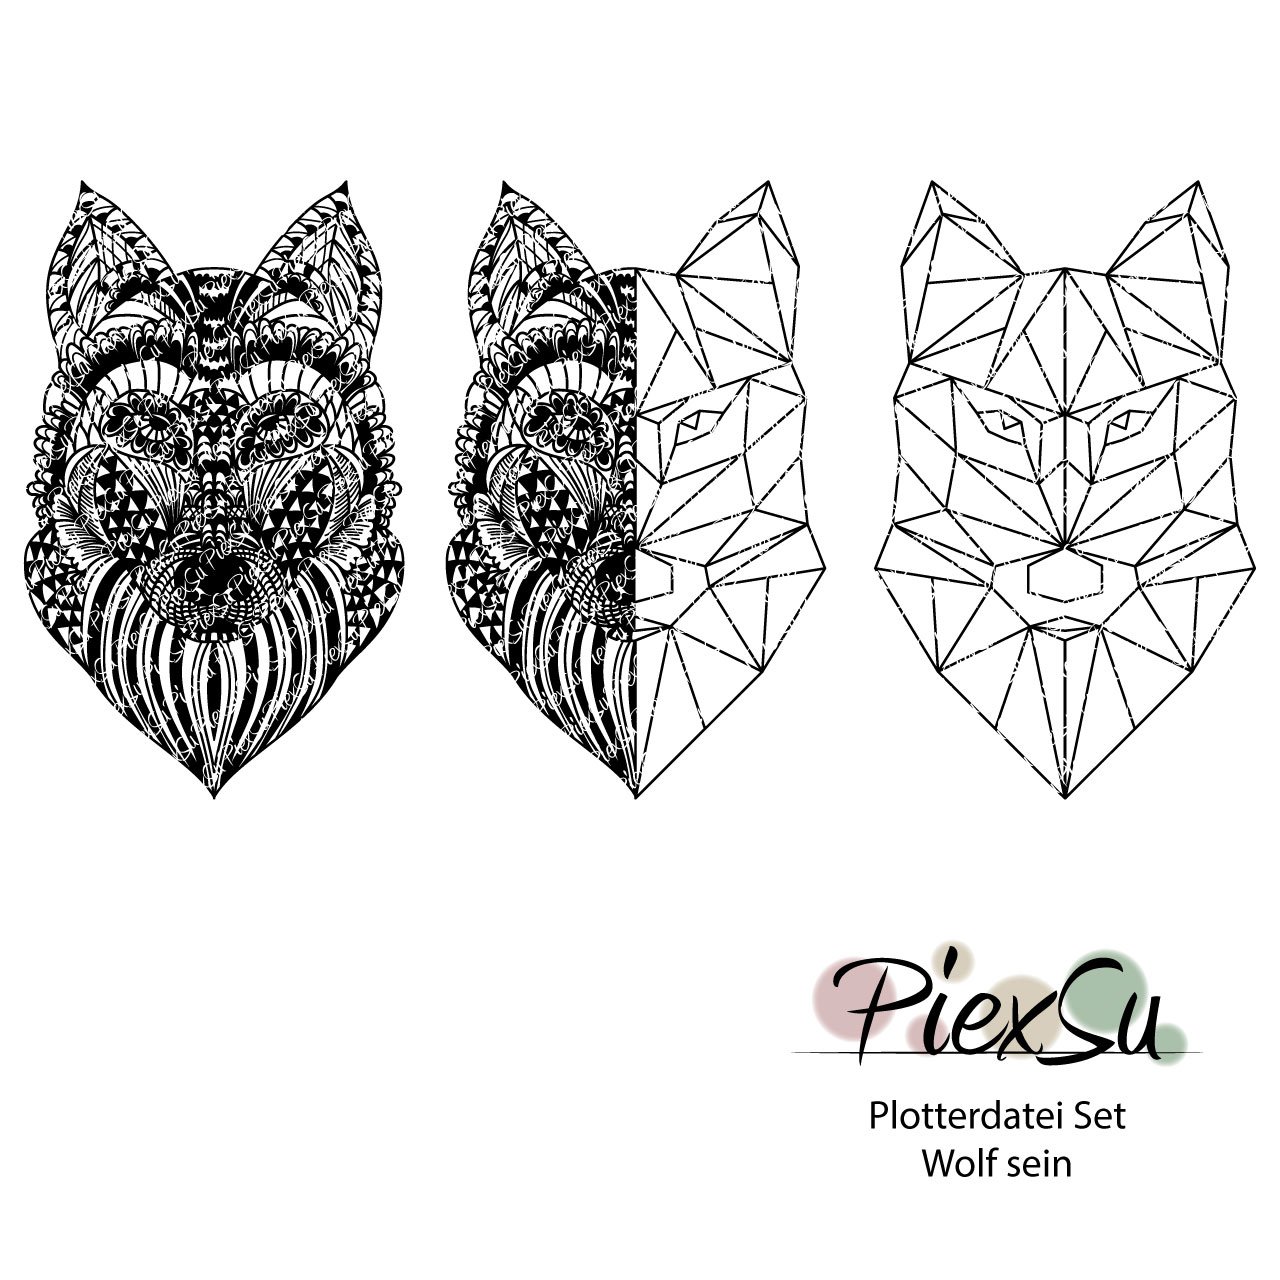 PiexSu-Plotterdatei-Set-Wolf-sein-Titelbild